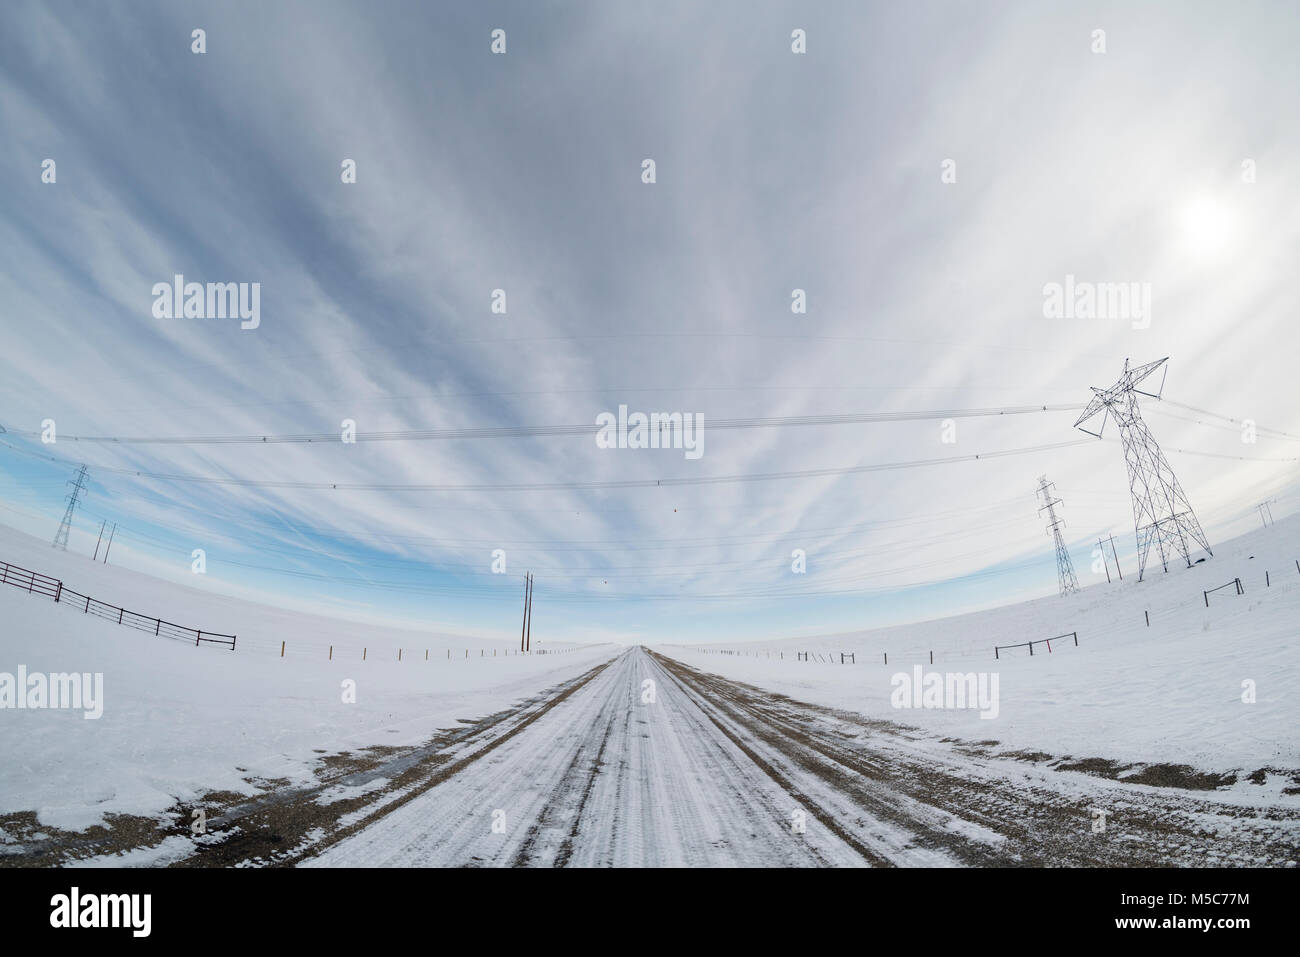 Alberta, Canada. Linee di trasmissione di potenza attraversando una strada di ghiaia sulle praterie in inverno, fisheye prospettiva. Foto Stock